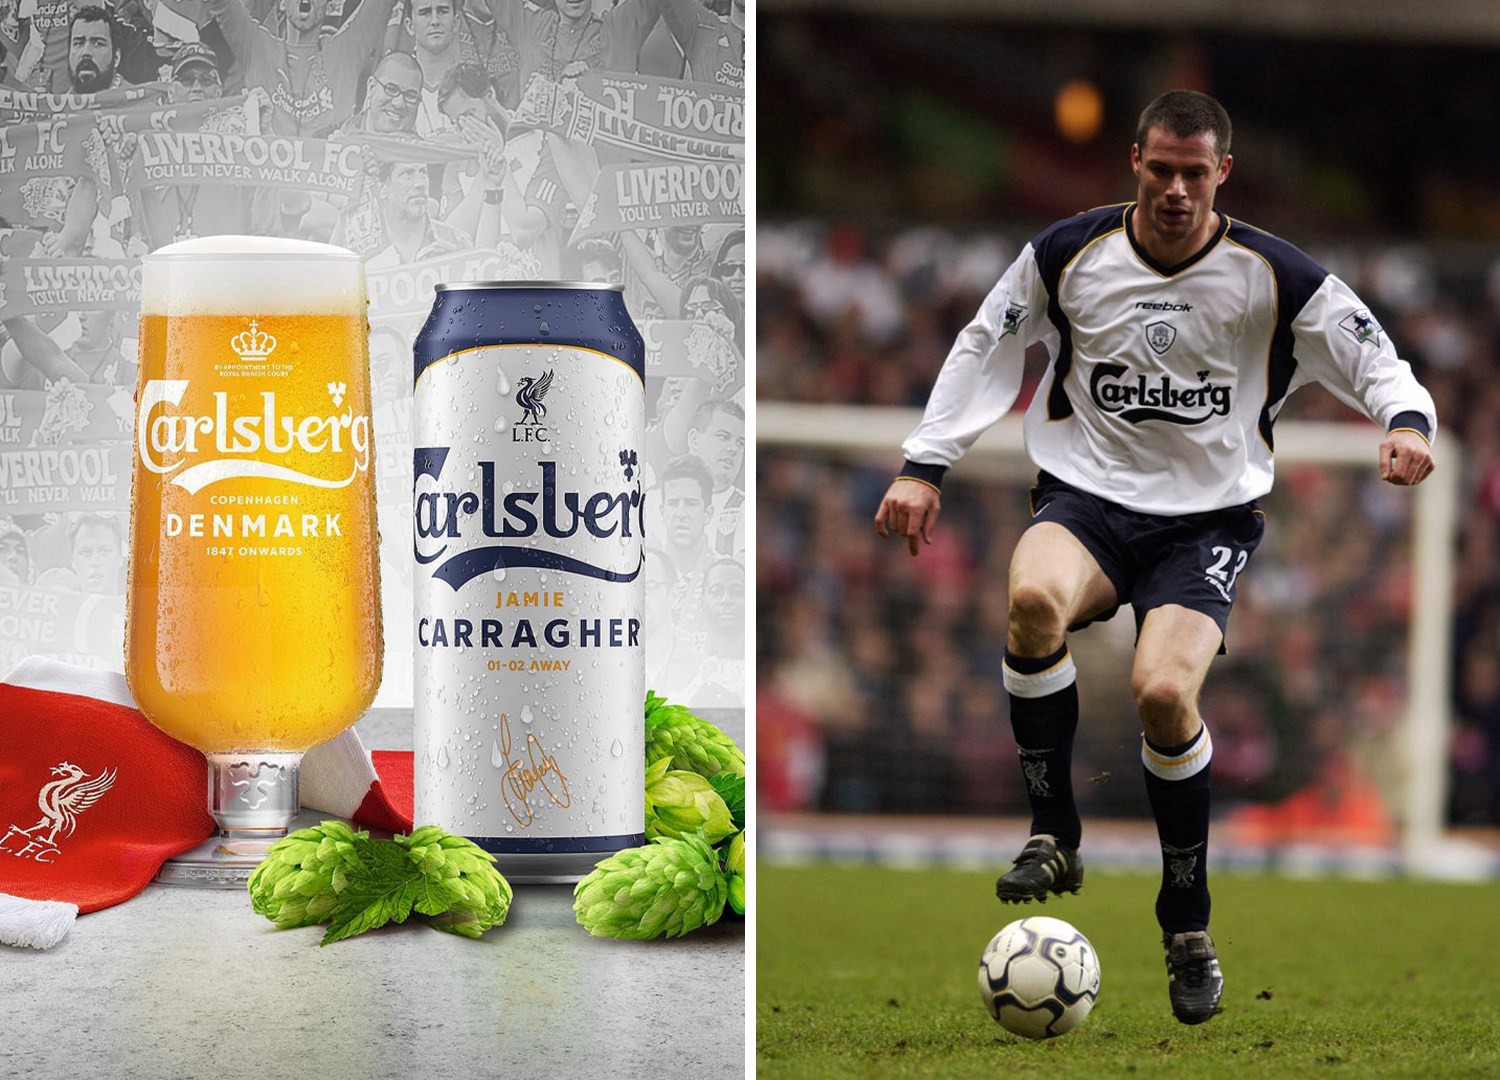 嘉士伯推出特别版啤酒庆祝与利物浦合作30周年